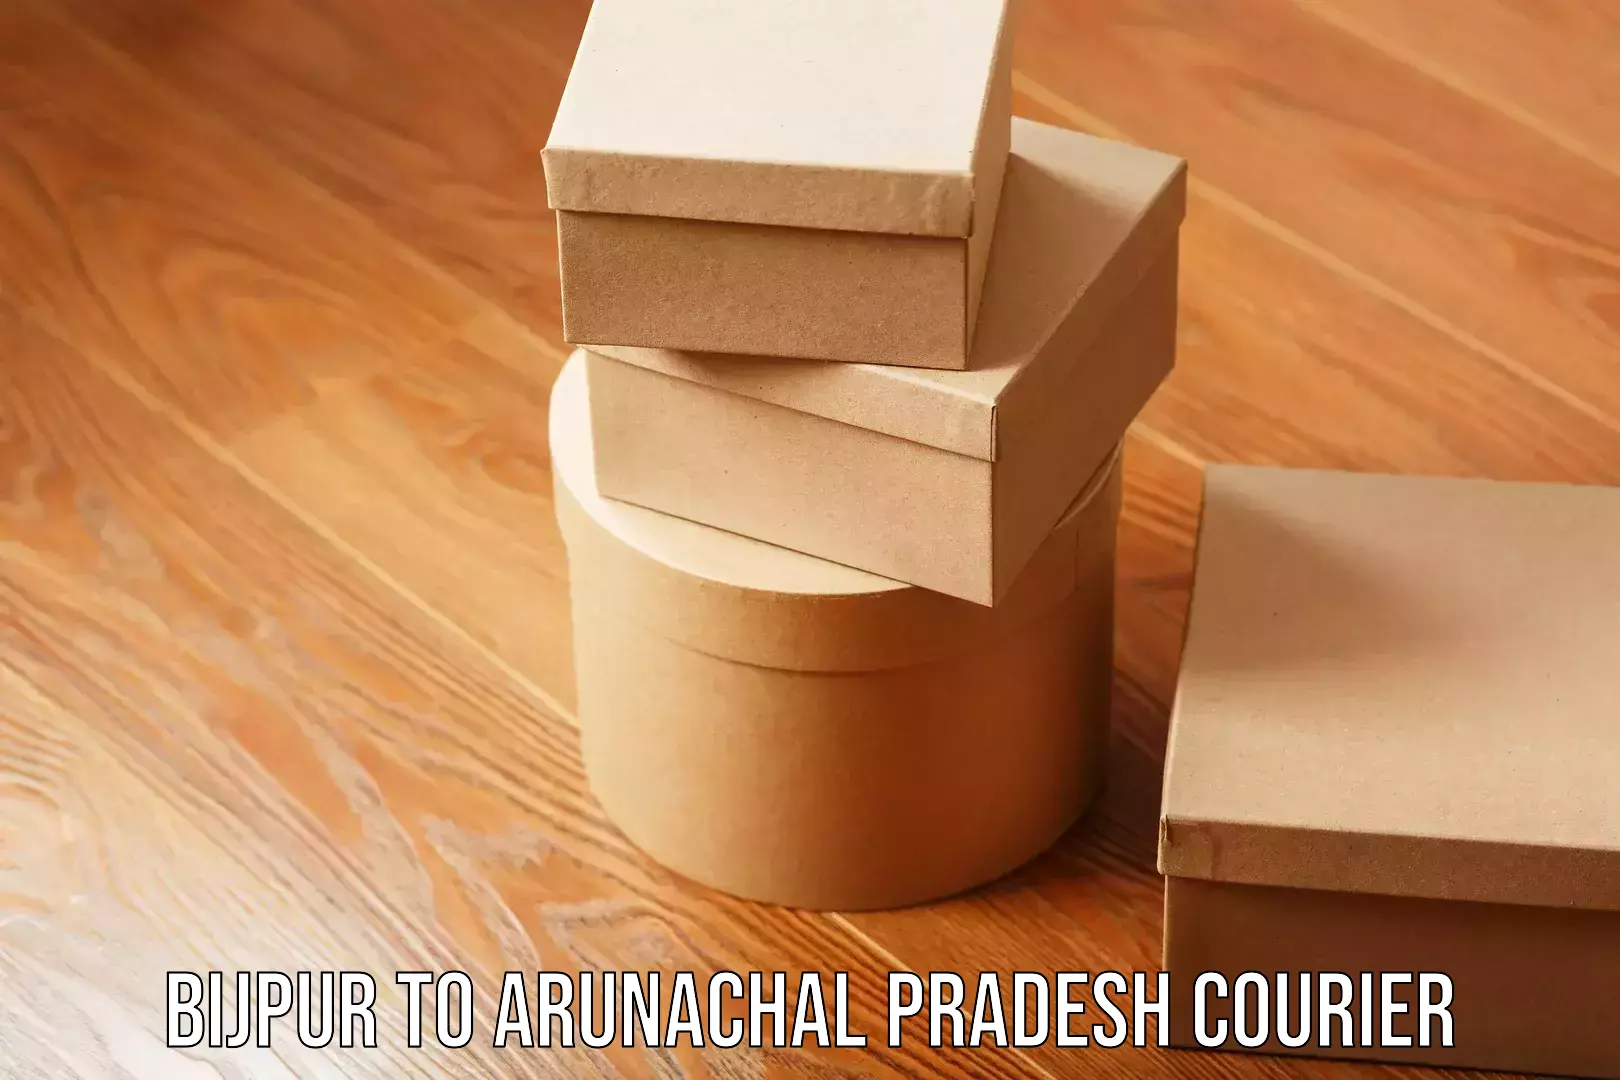 Urgent courier needs Bijpur to Arunachal Pradesh